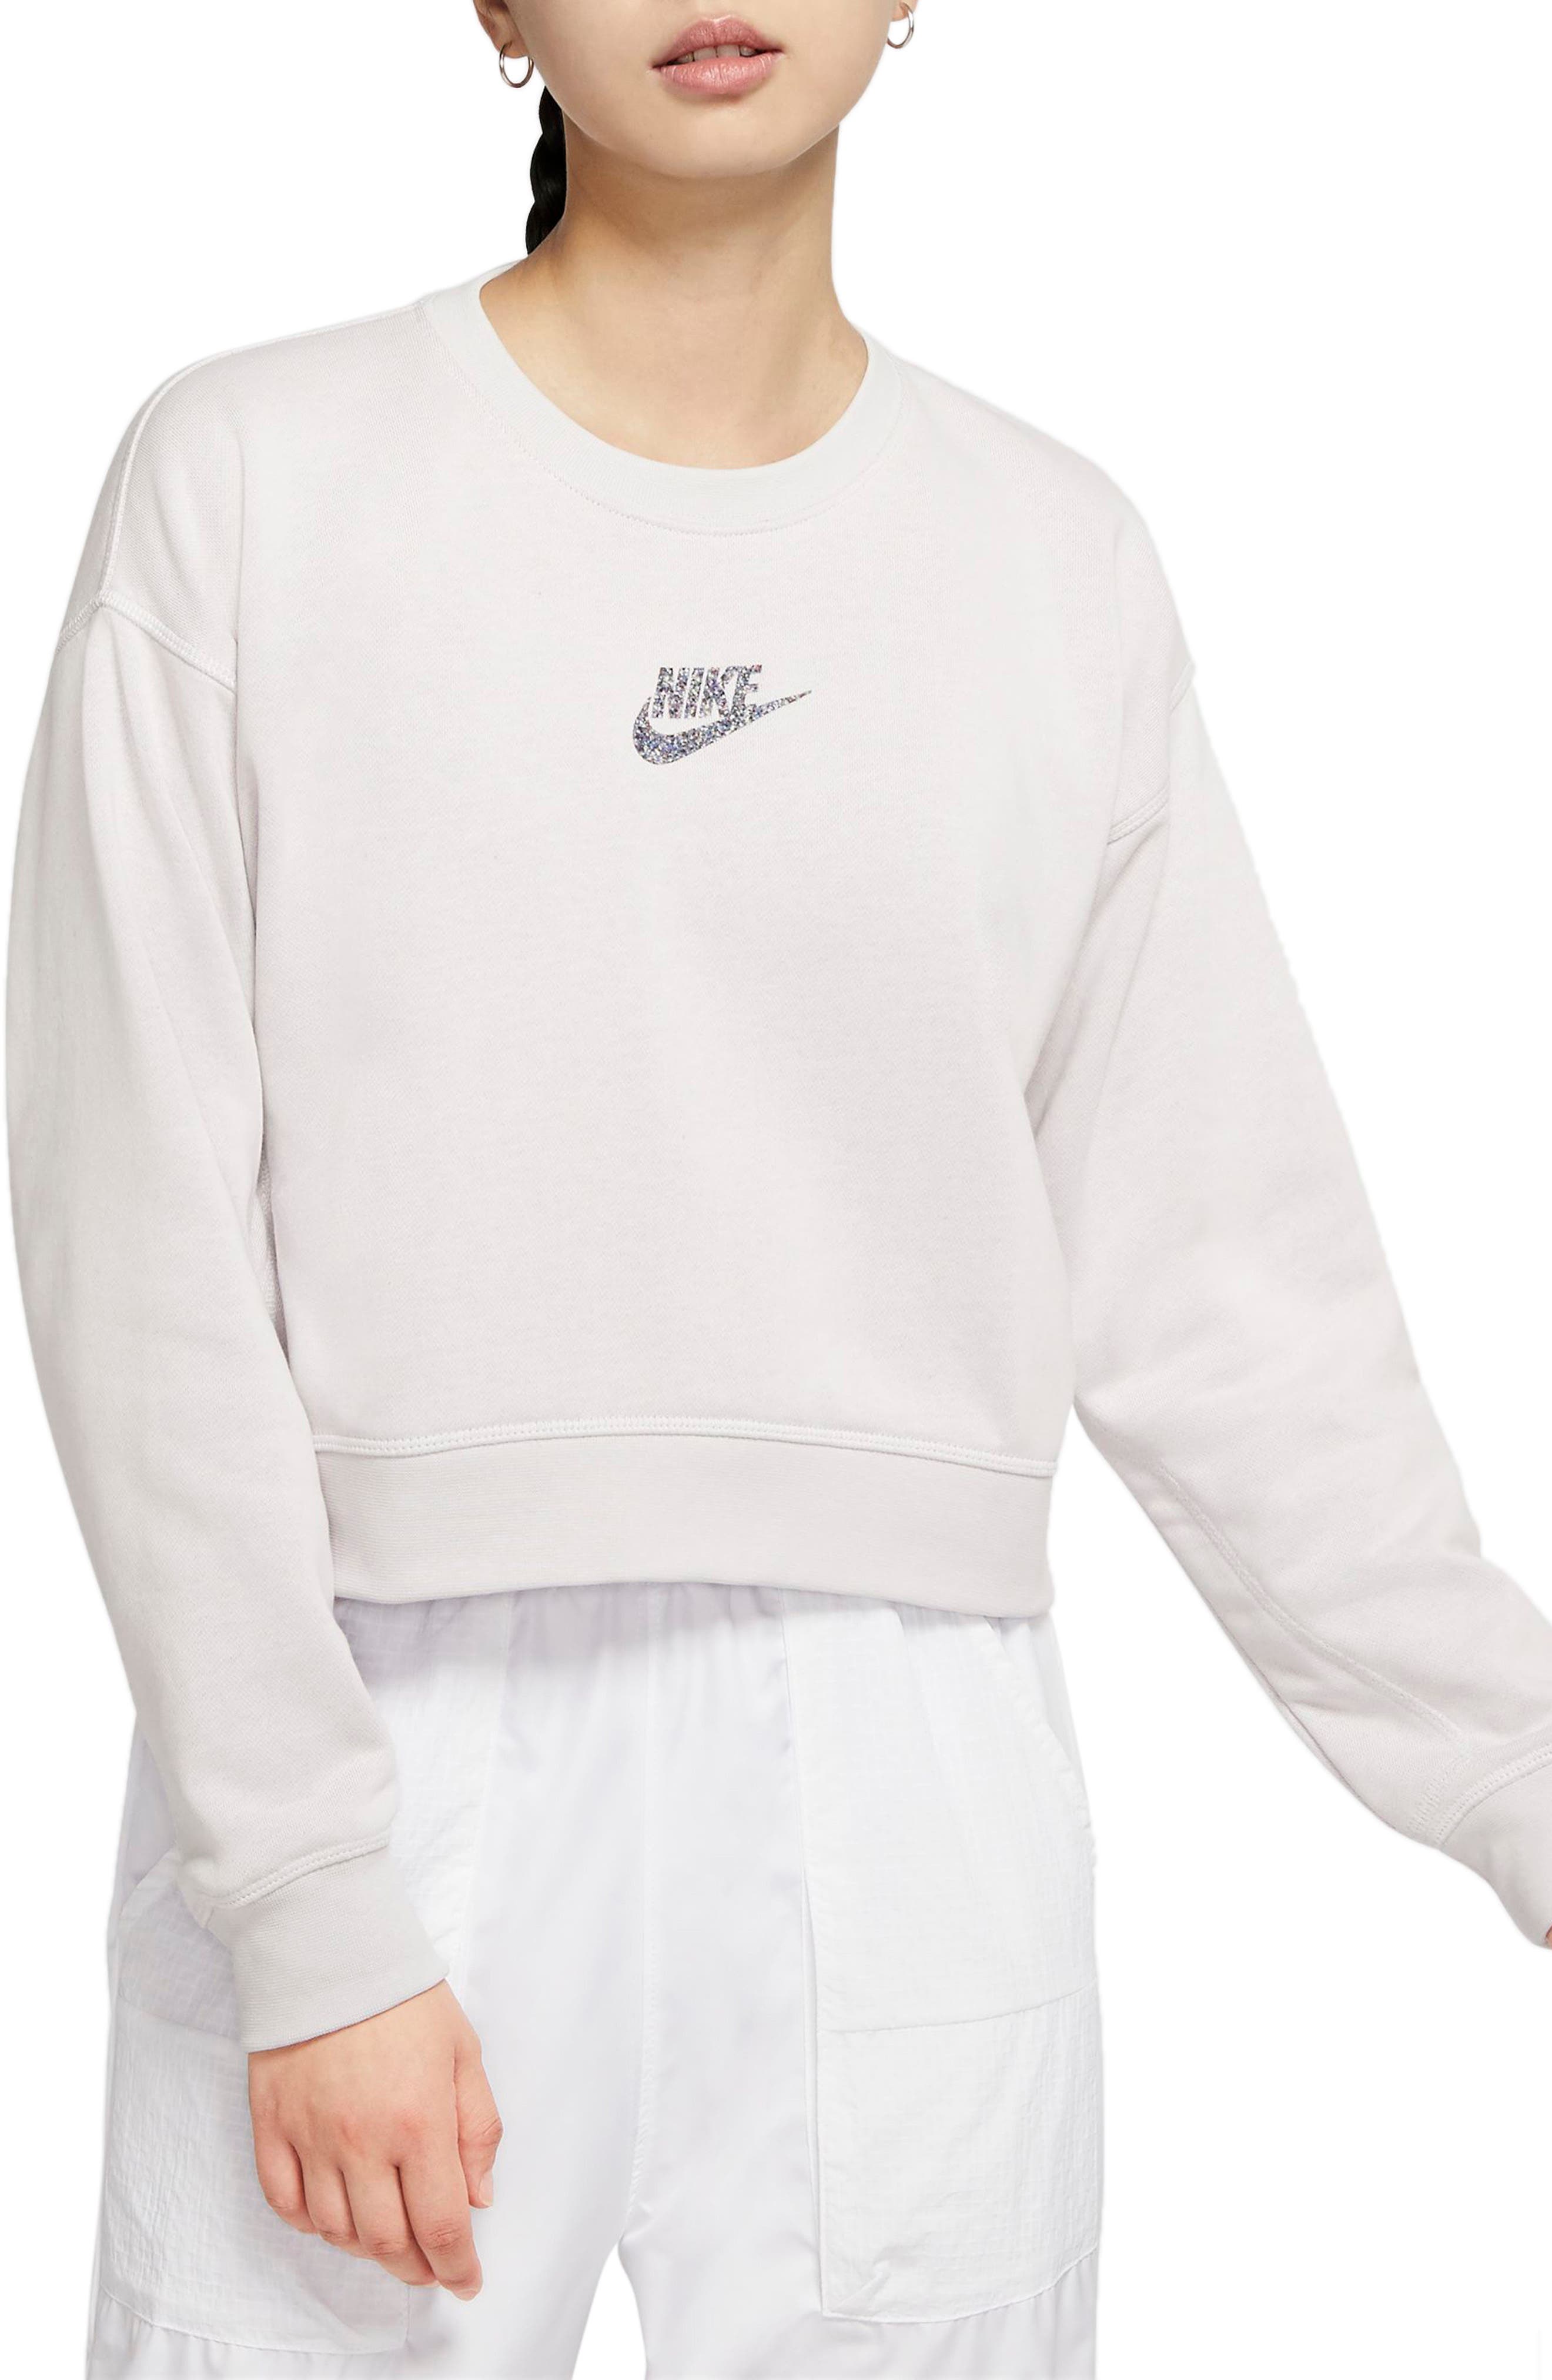 nike white sweater women's